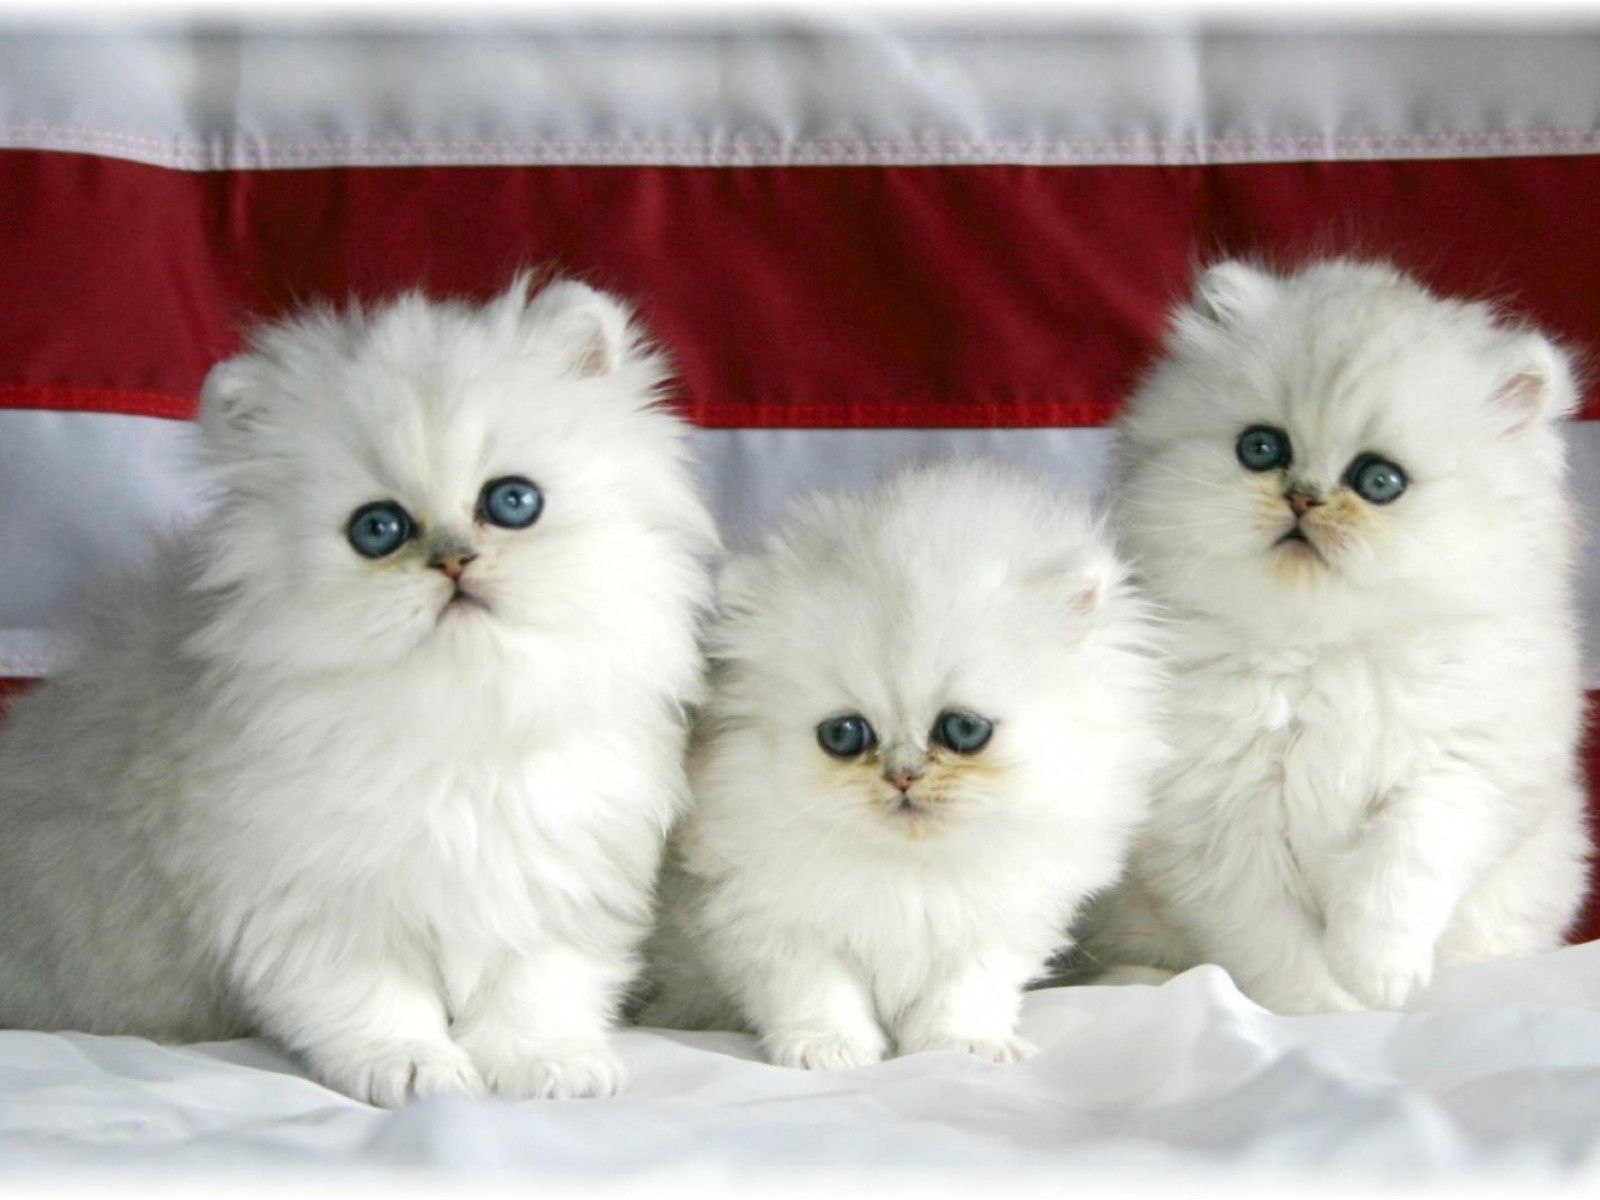 دانلود عکس رویایی سه گربه پرشین سفید چشم آبی